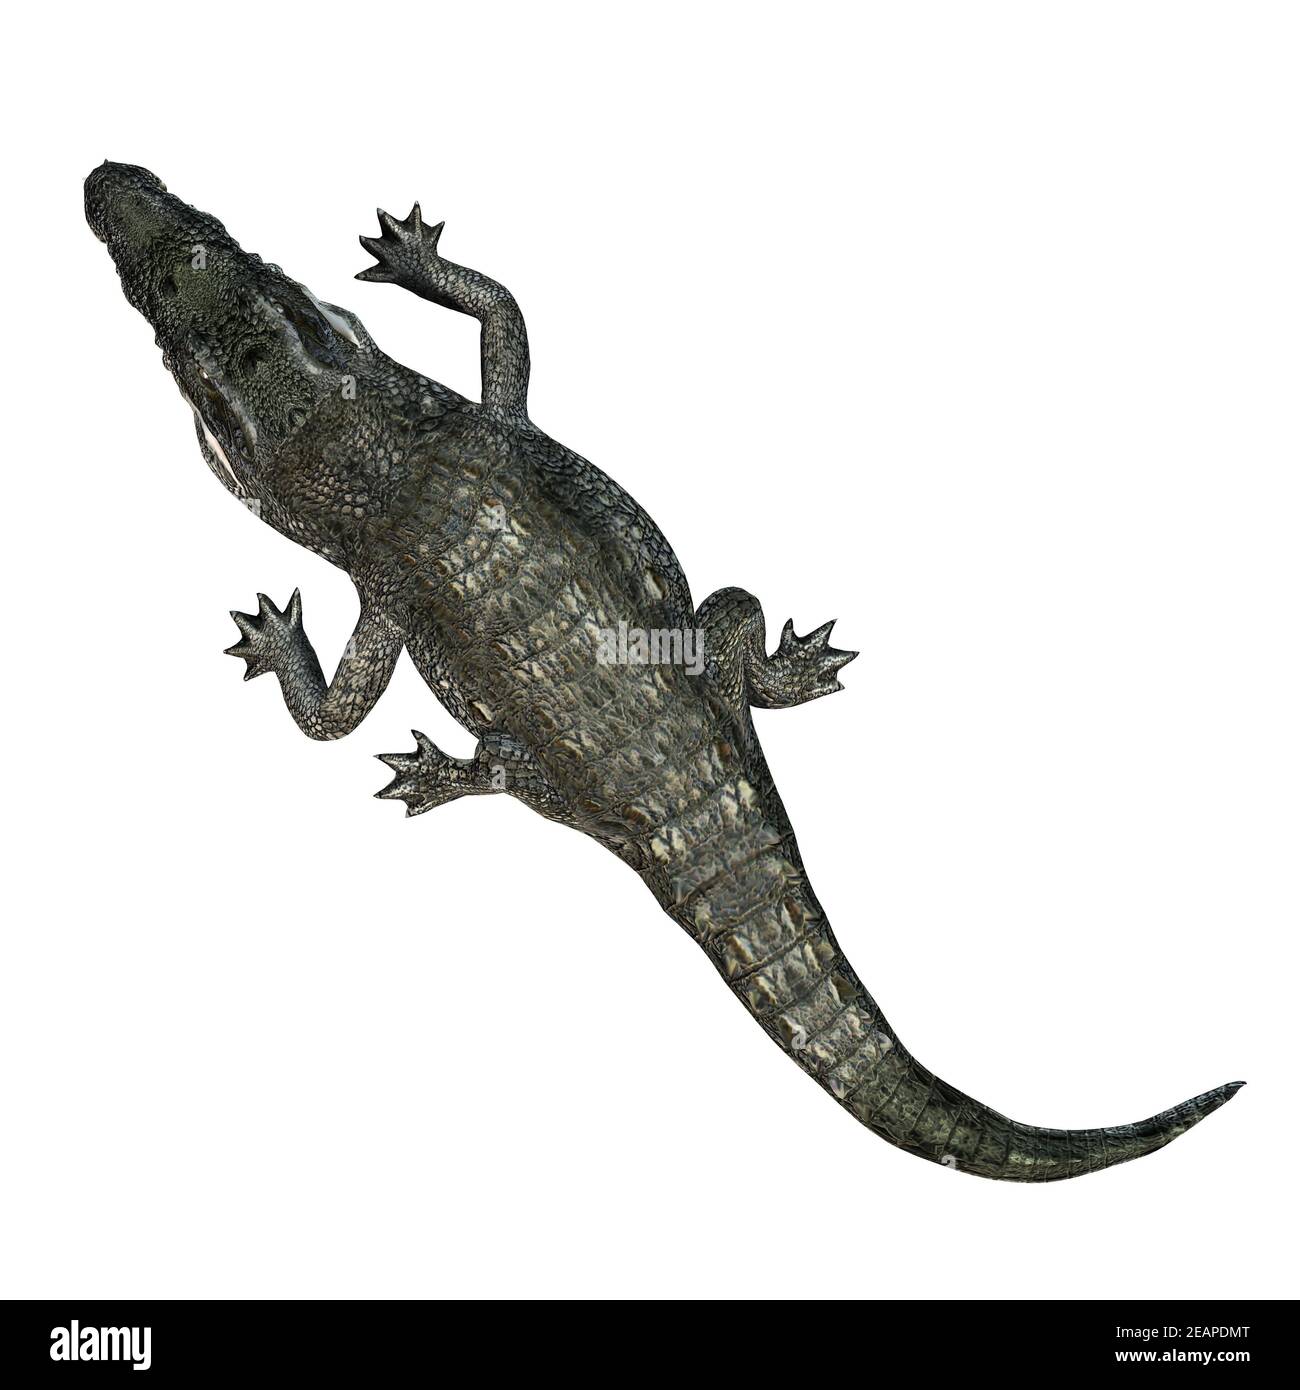 Wild animals - crocodile - isolated on white background Stock Photo